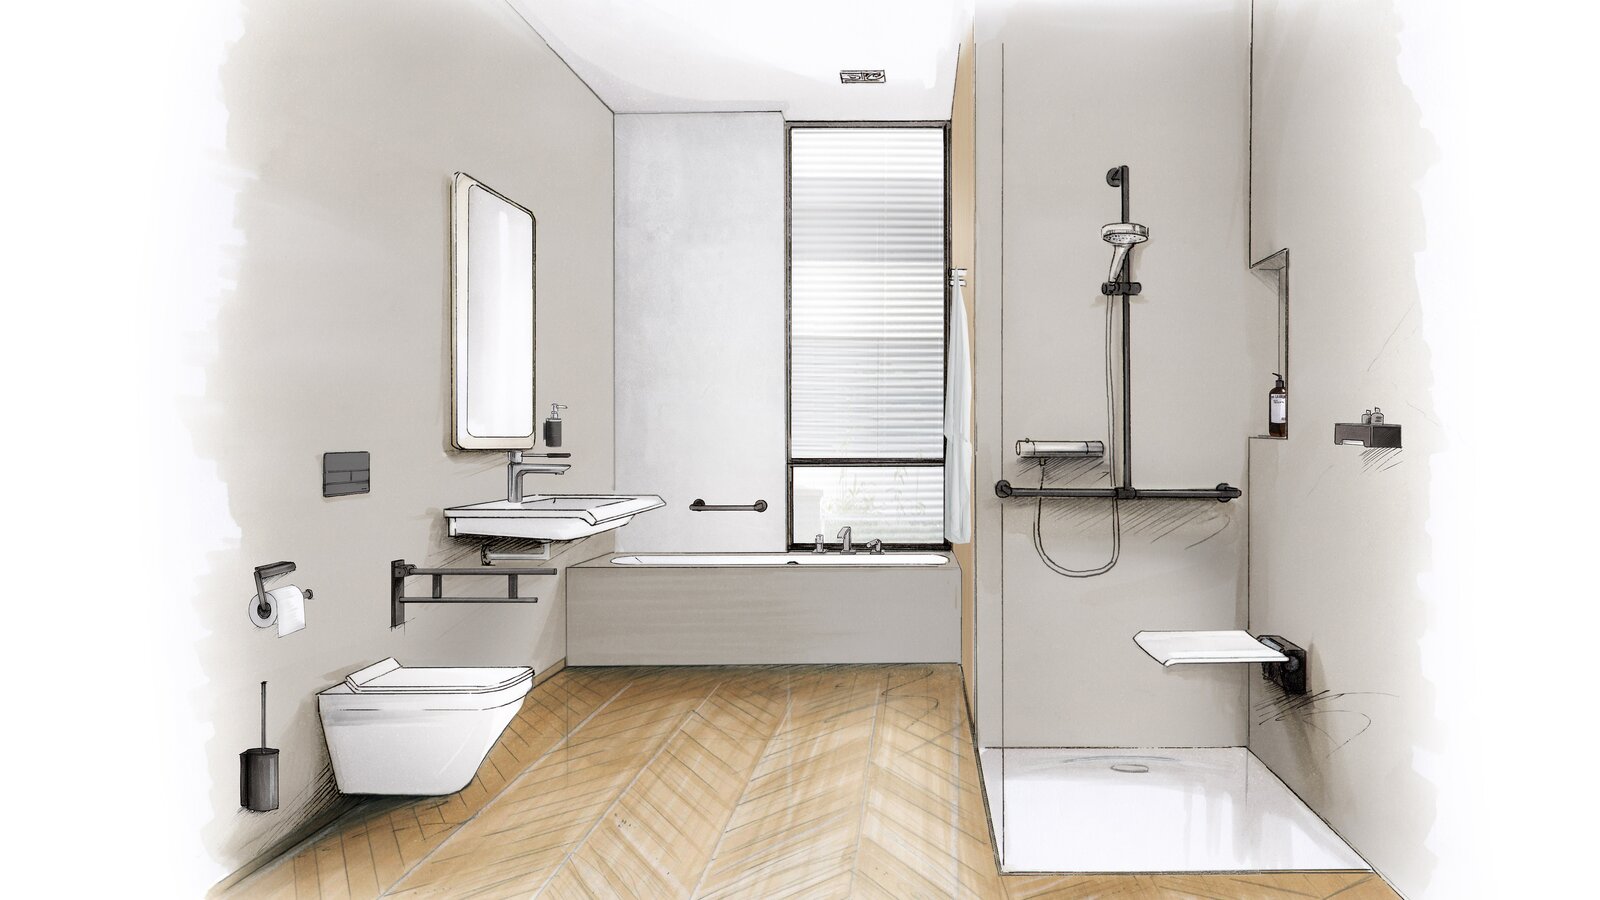 Zeichnung eines barrierefreien Bads mit Waschplatz, Duschbereich und WC